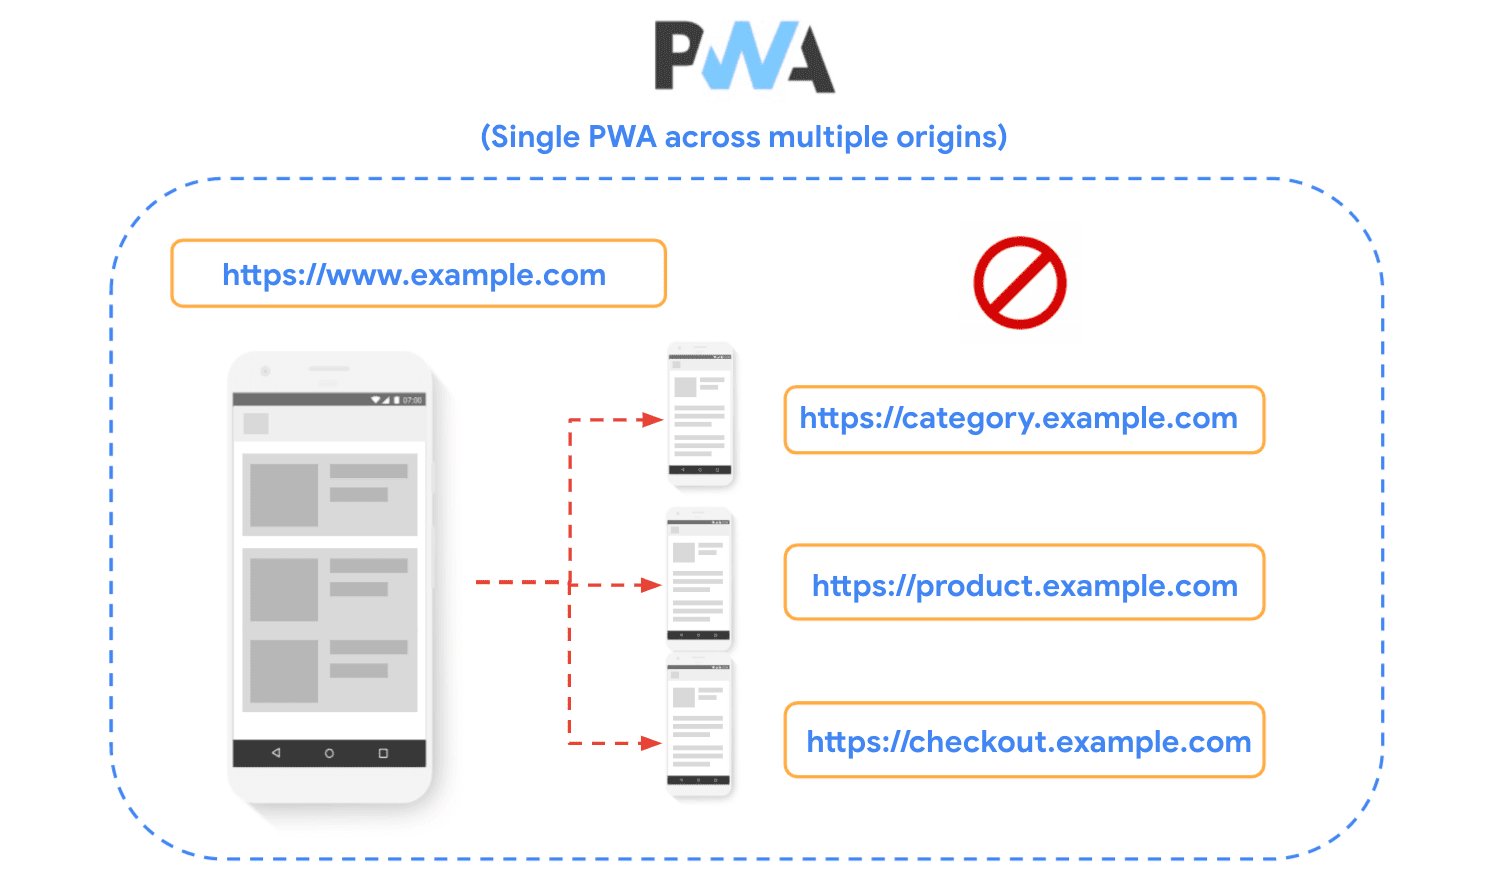 نموداری که سایتی را نشان می دهد که به چندین مبدا تقسیم شده است و نشان می دهد که این تکنیک در هنگام ساختن PWA منع شده است.